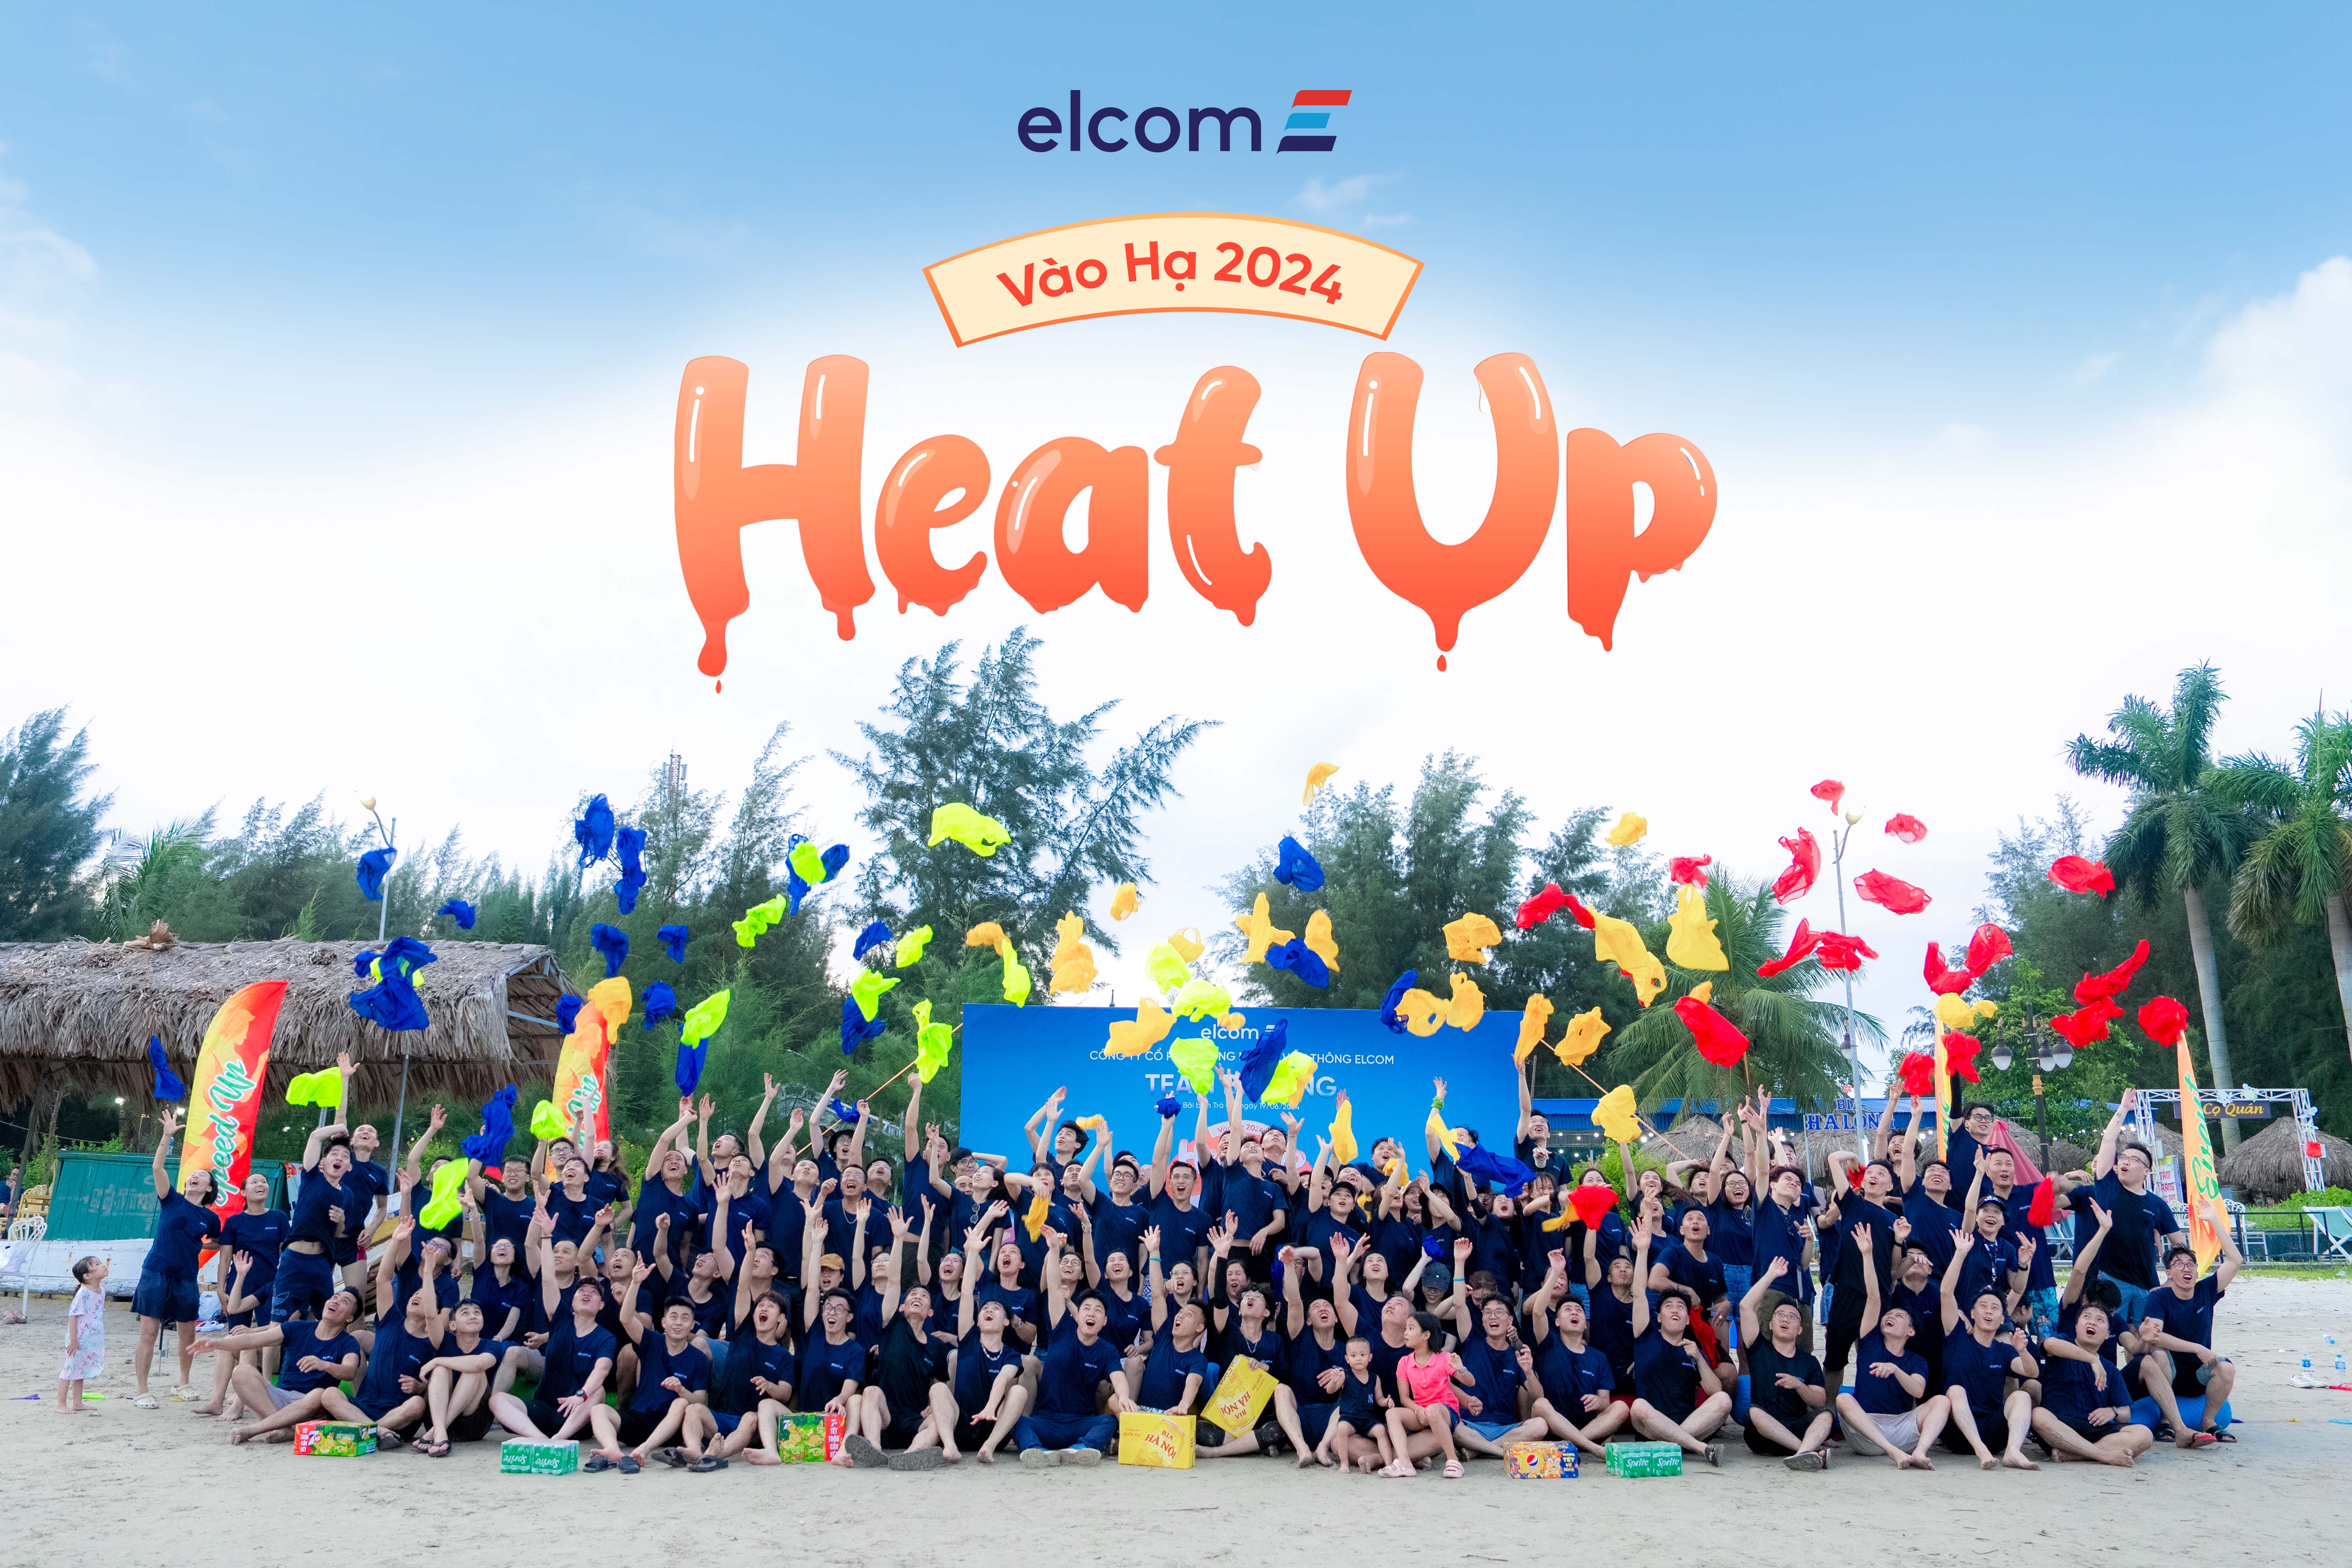 Vào hạ 2024: Hàng loạt hoạt động đổ bộ cùng Elcom “Heat Up” hè này